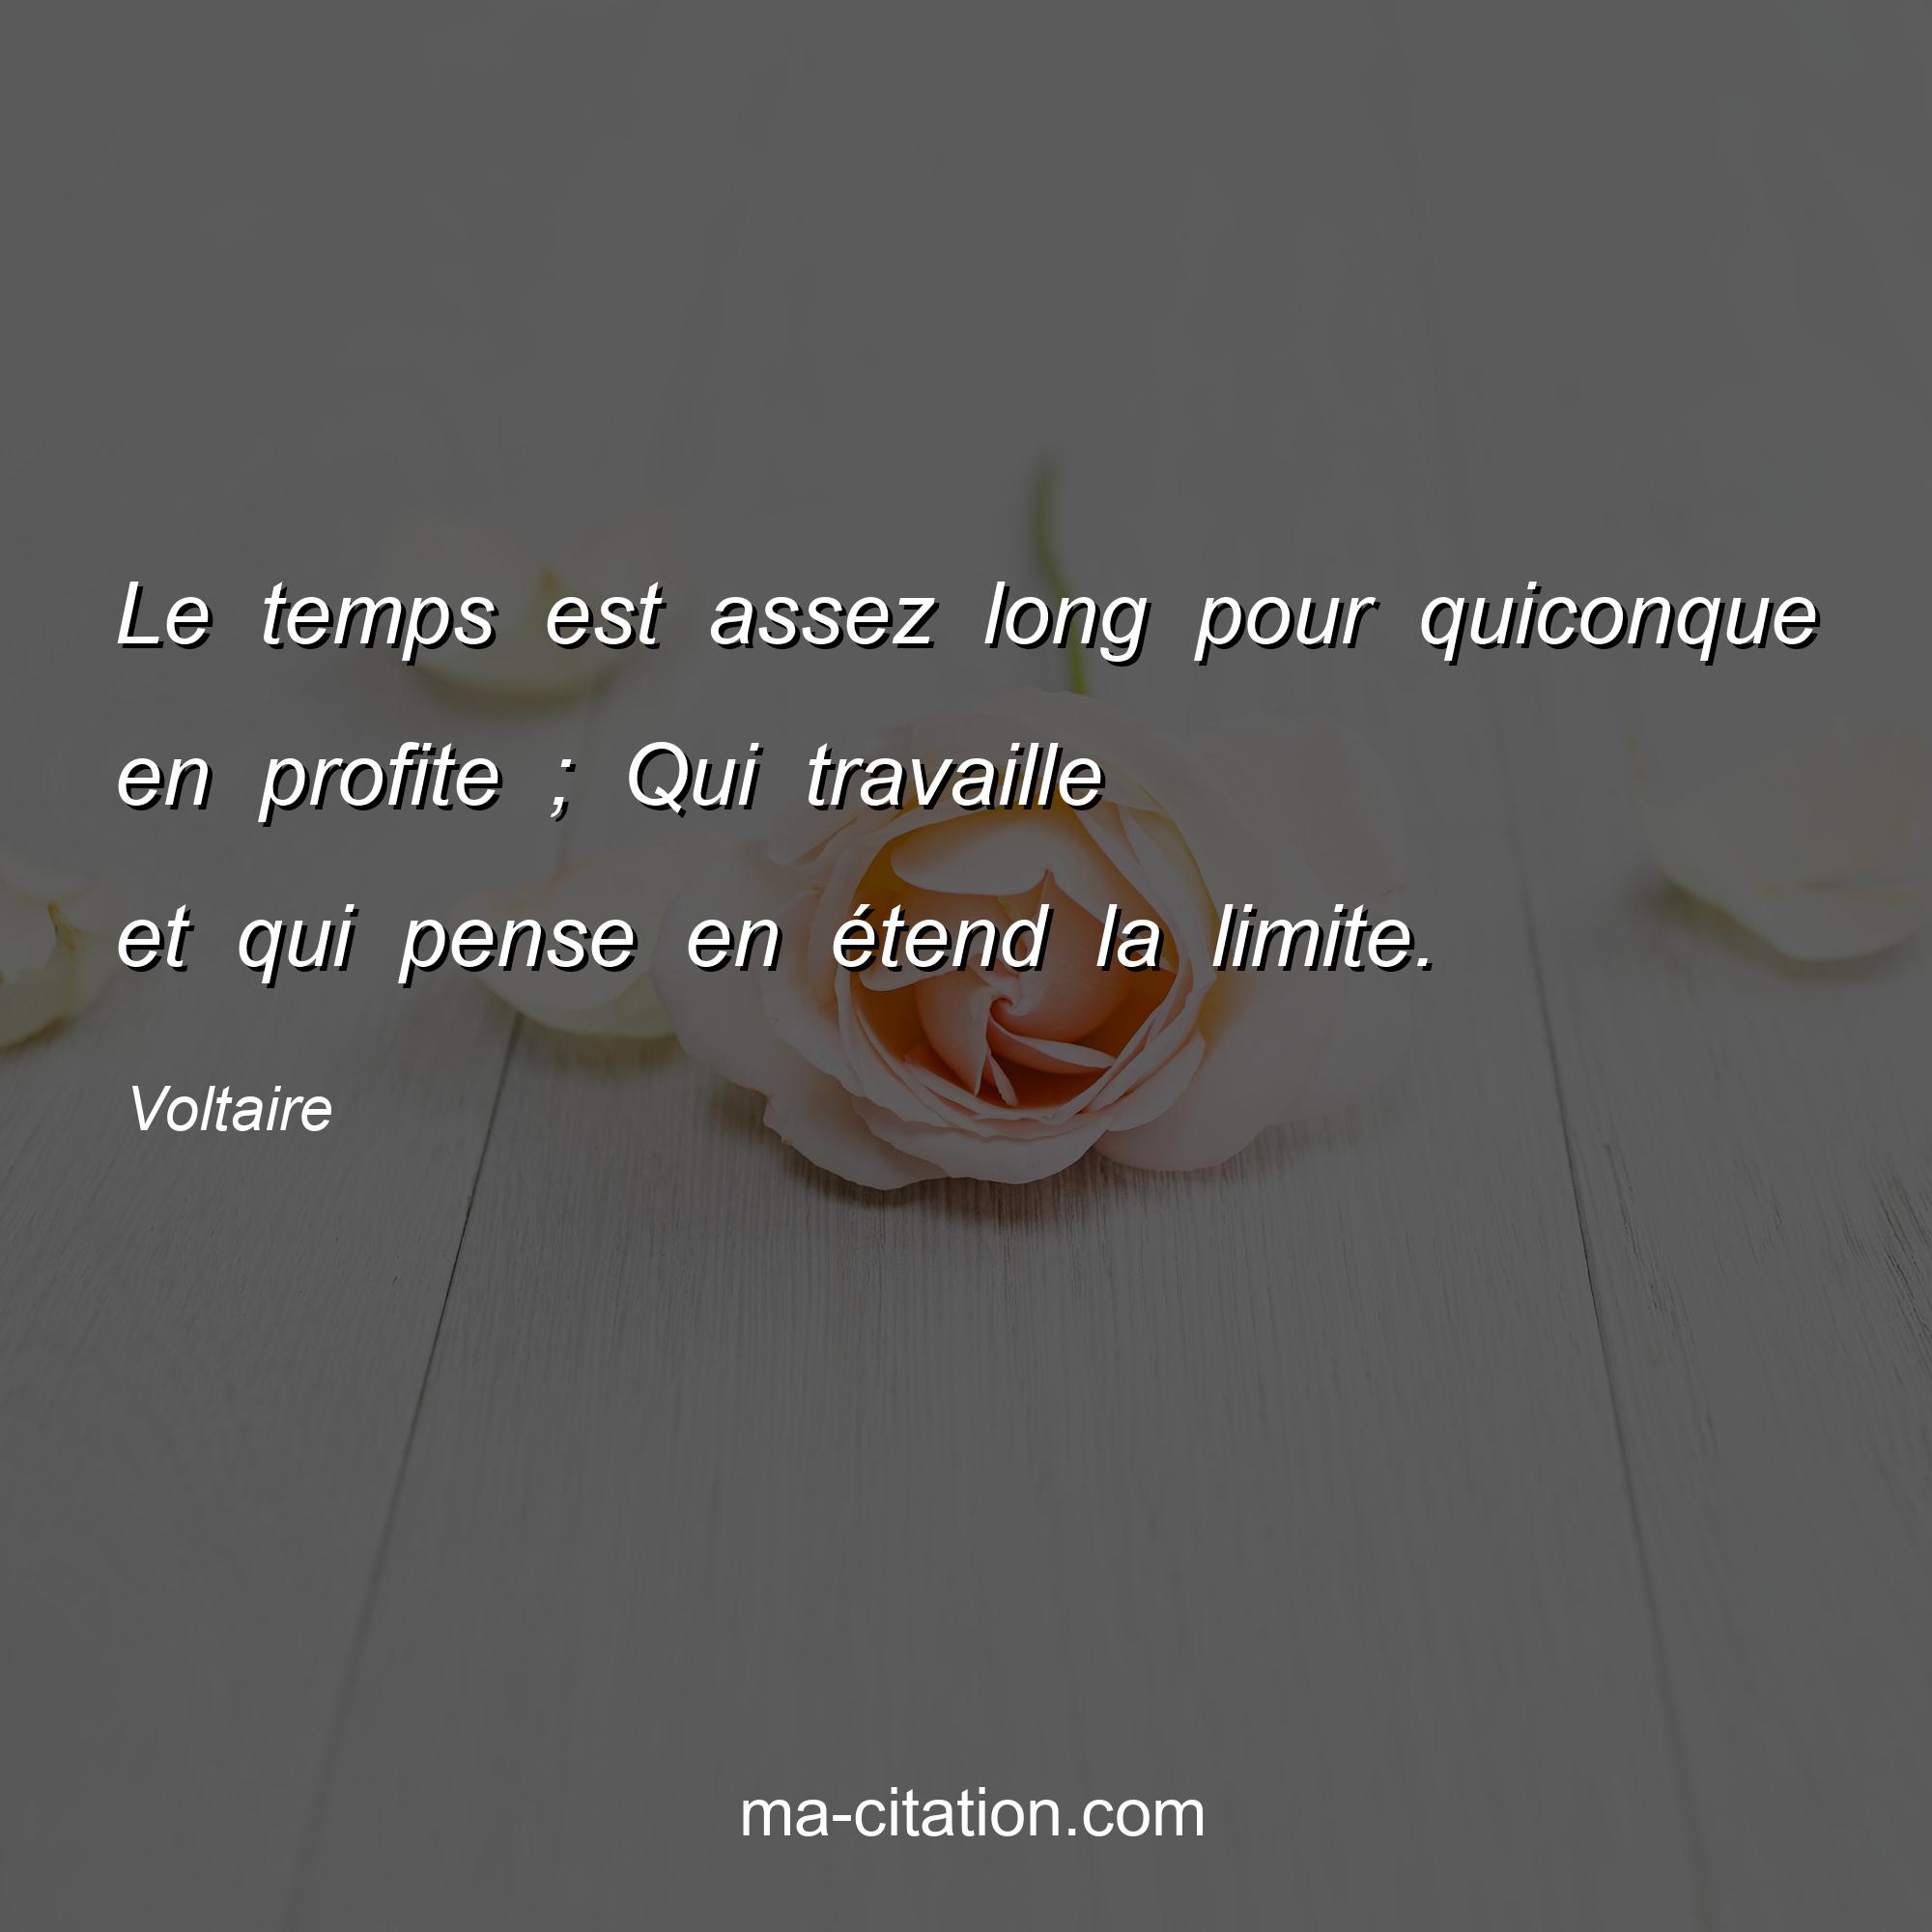 Voltaire : Le temps est assez long pour quiconque en profite ; Qui travaille et qui pense en étend la limite.